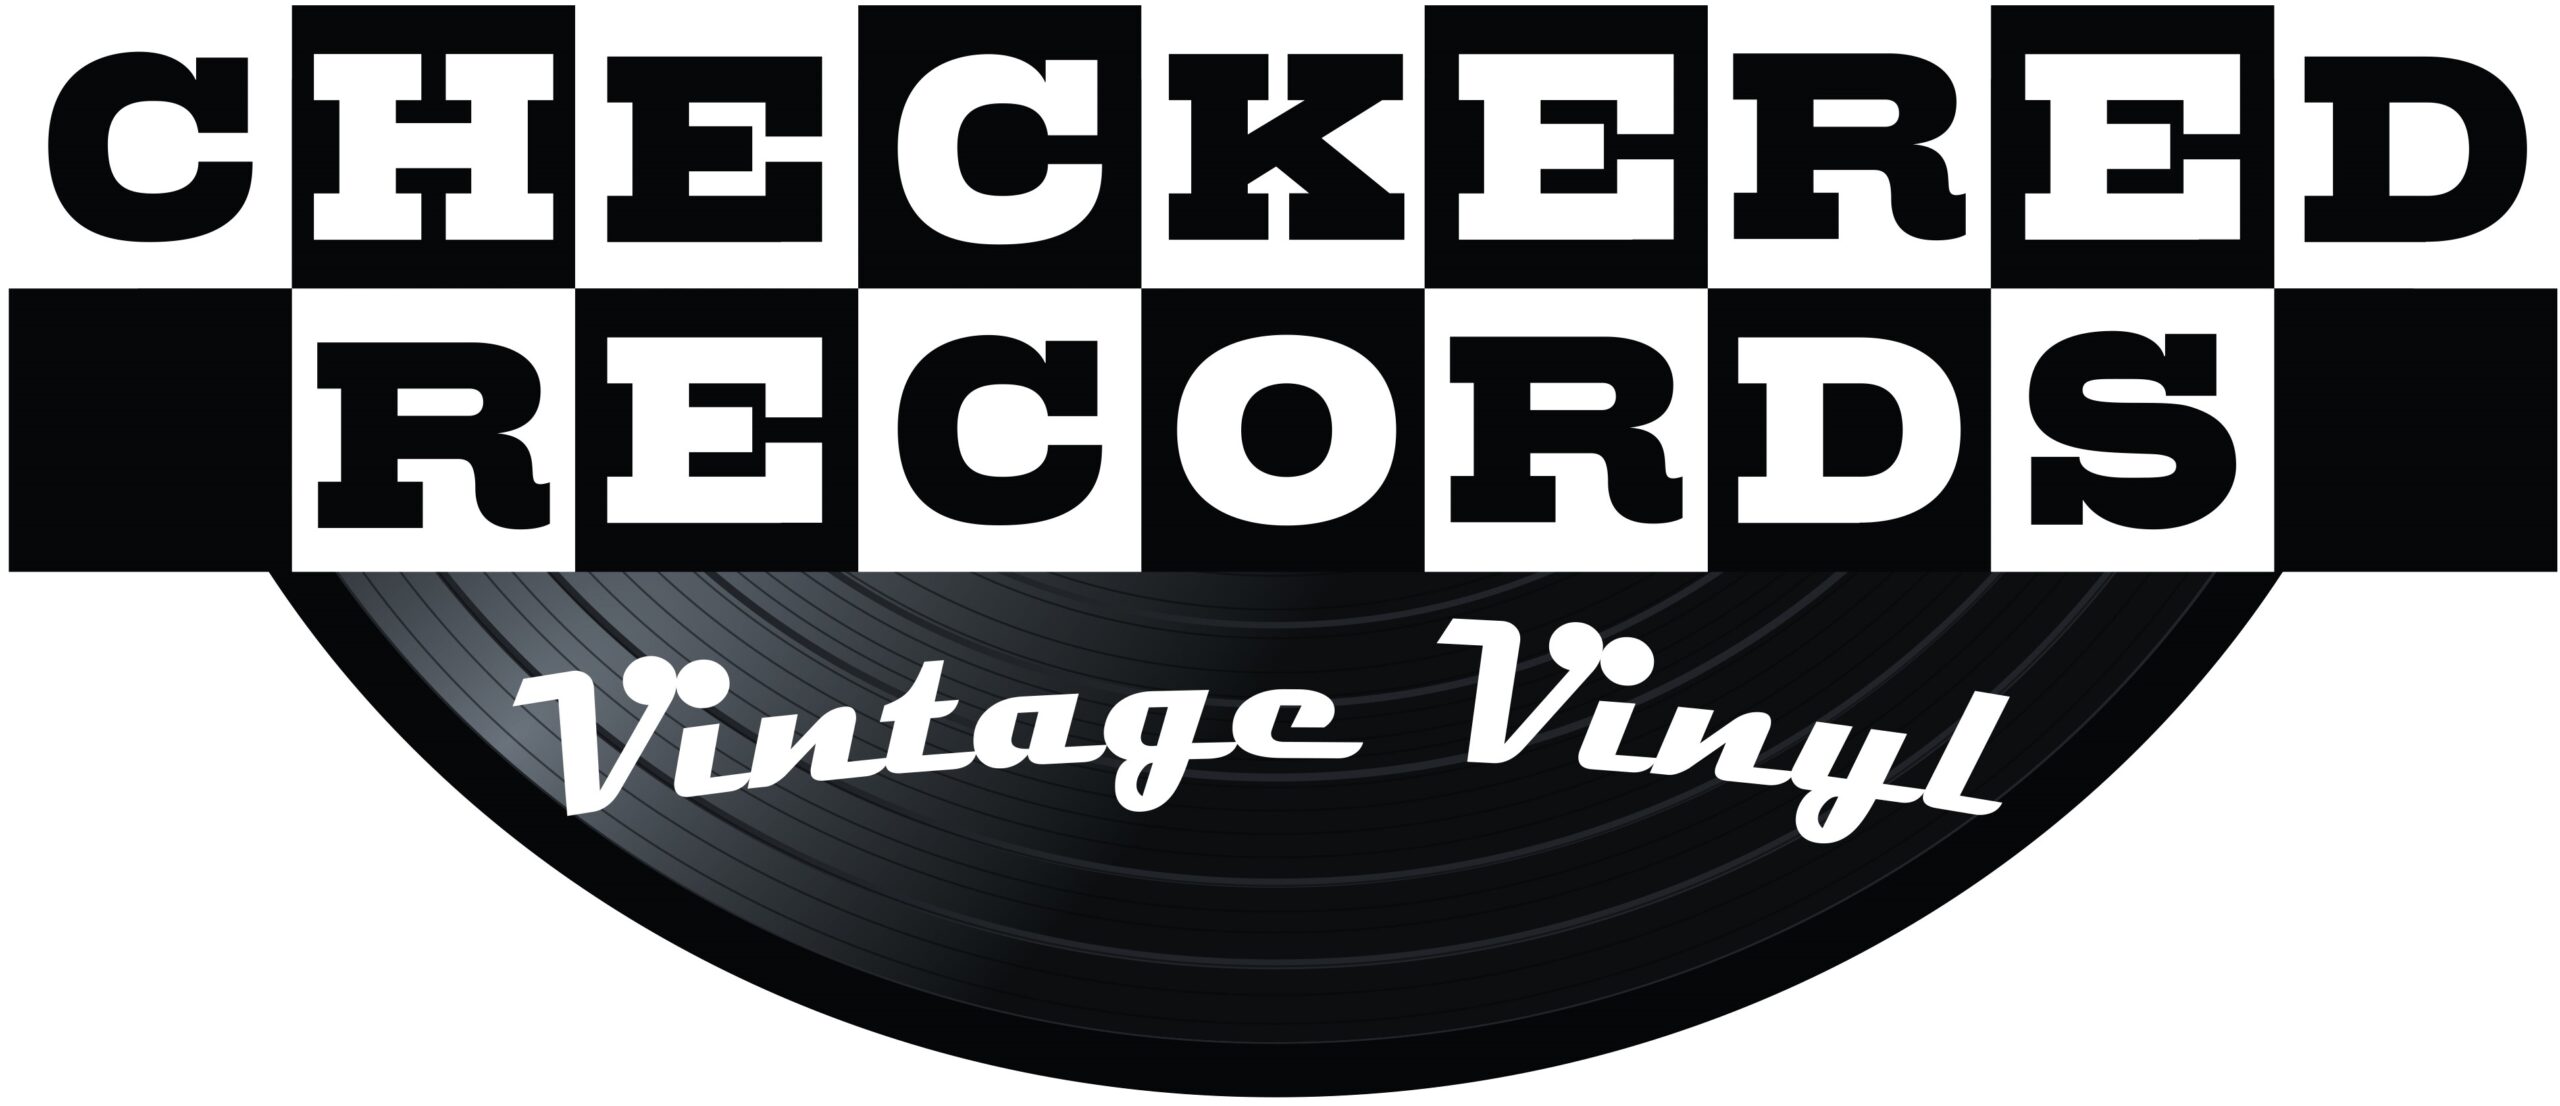 Checkered Records Logo